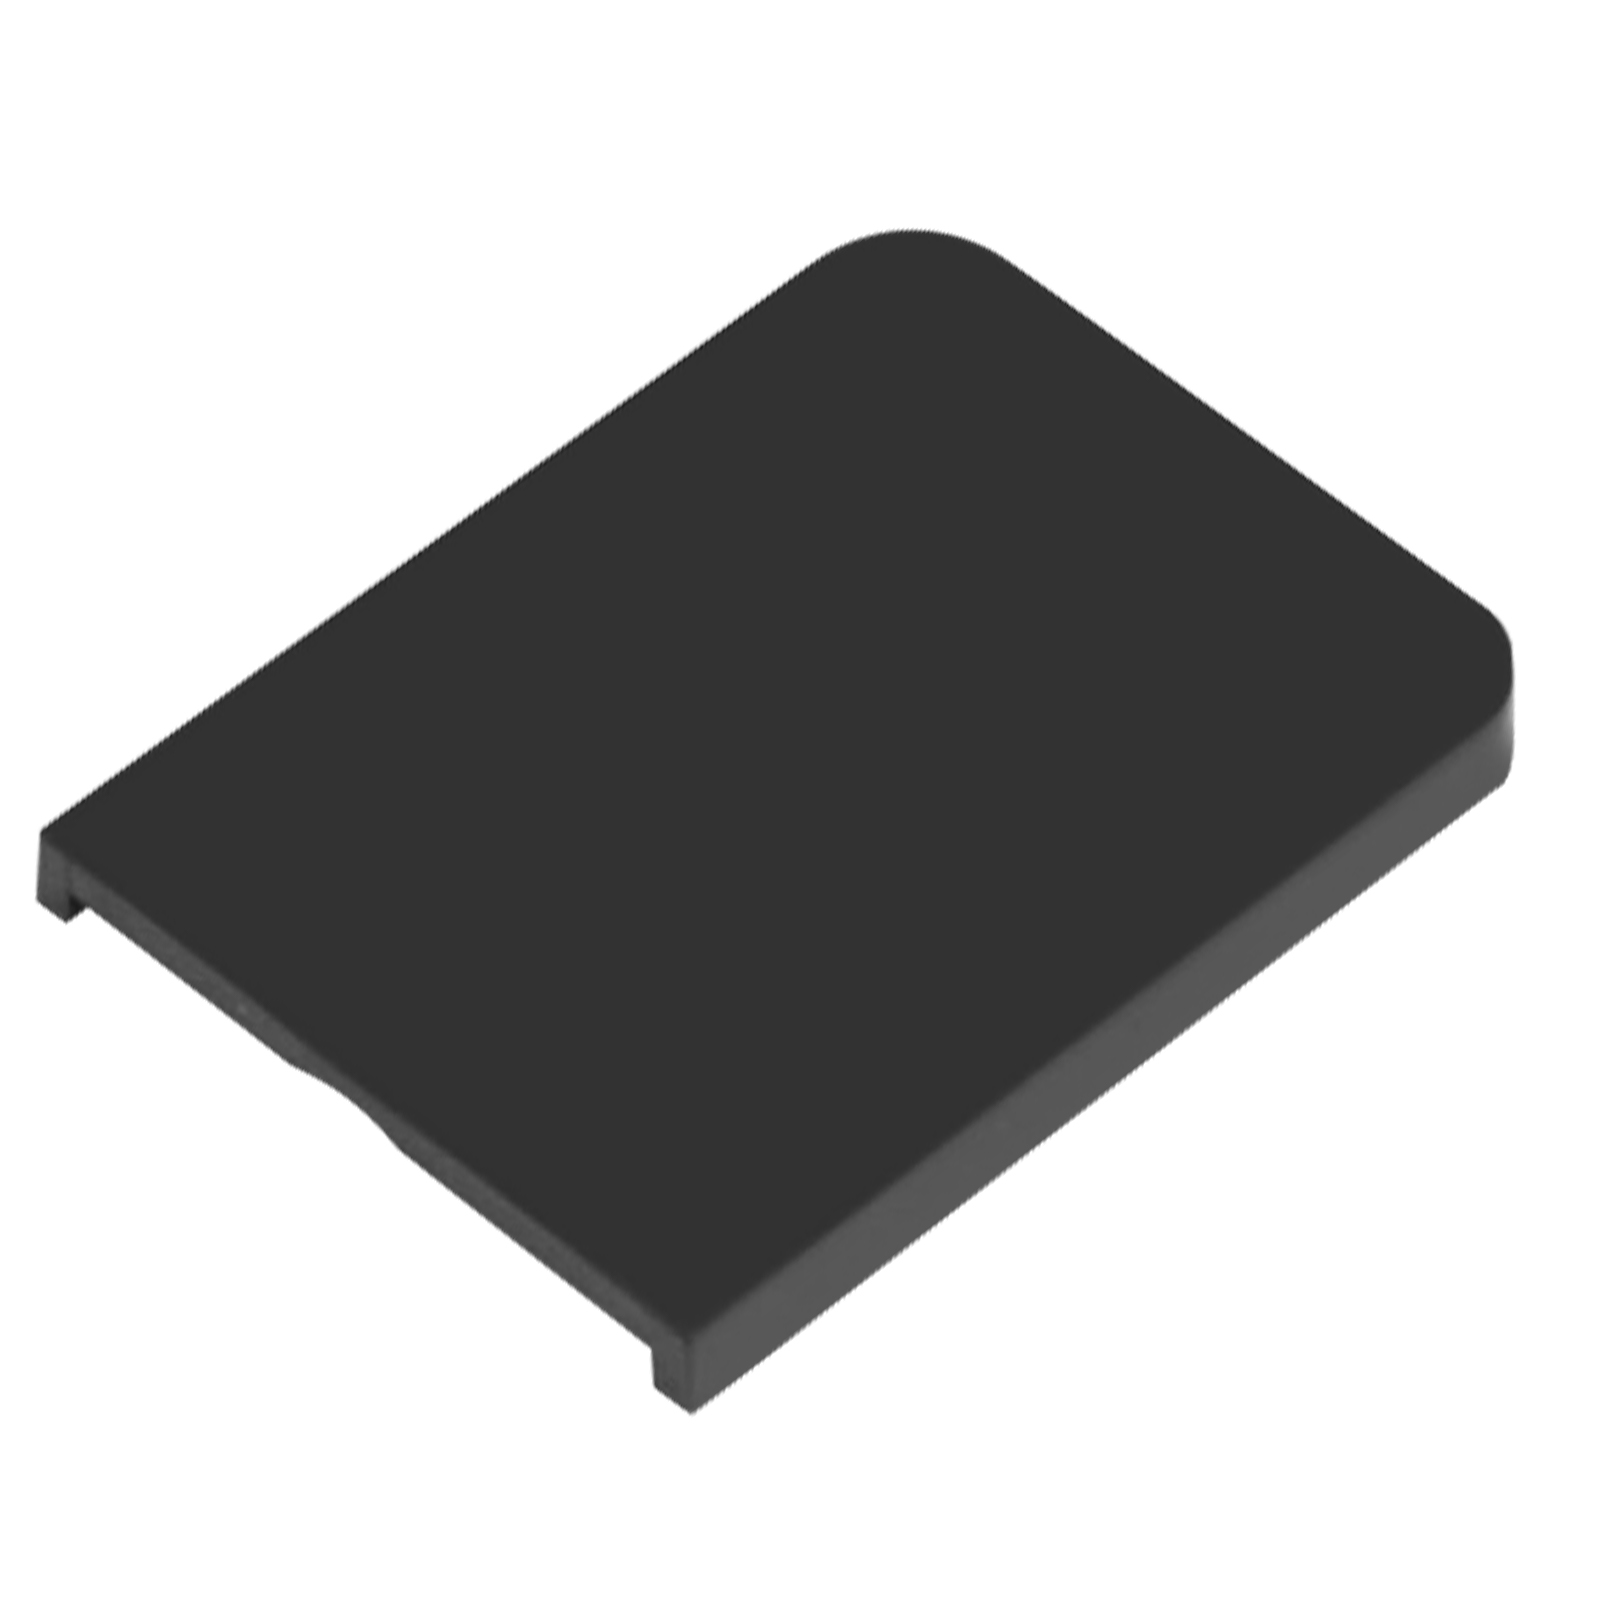 Couverture de Tableau de Bord pour Trottinette Xiaomi M365 Pro et